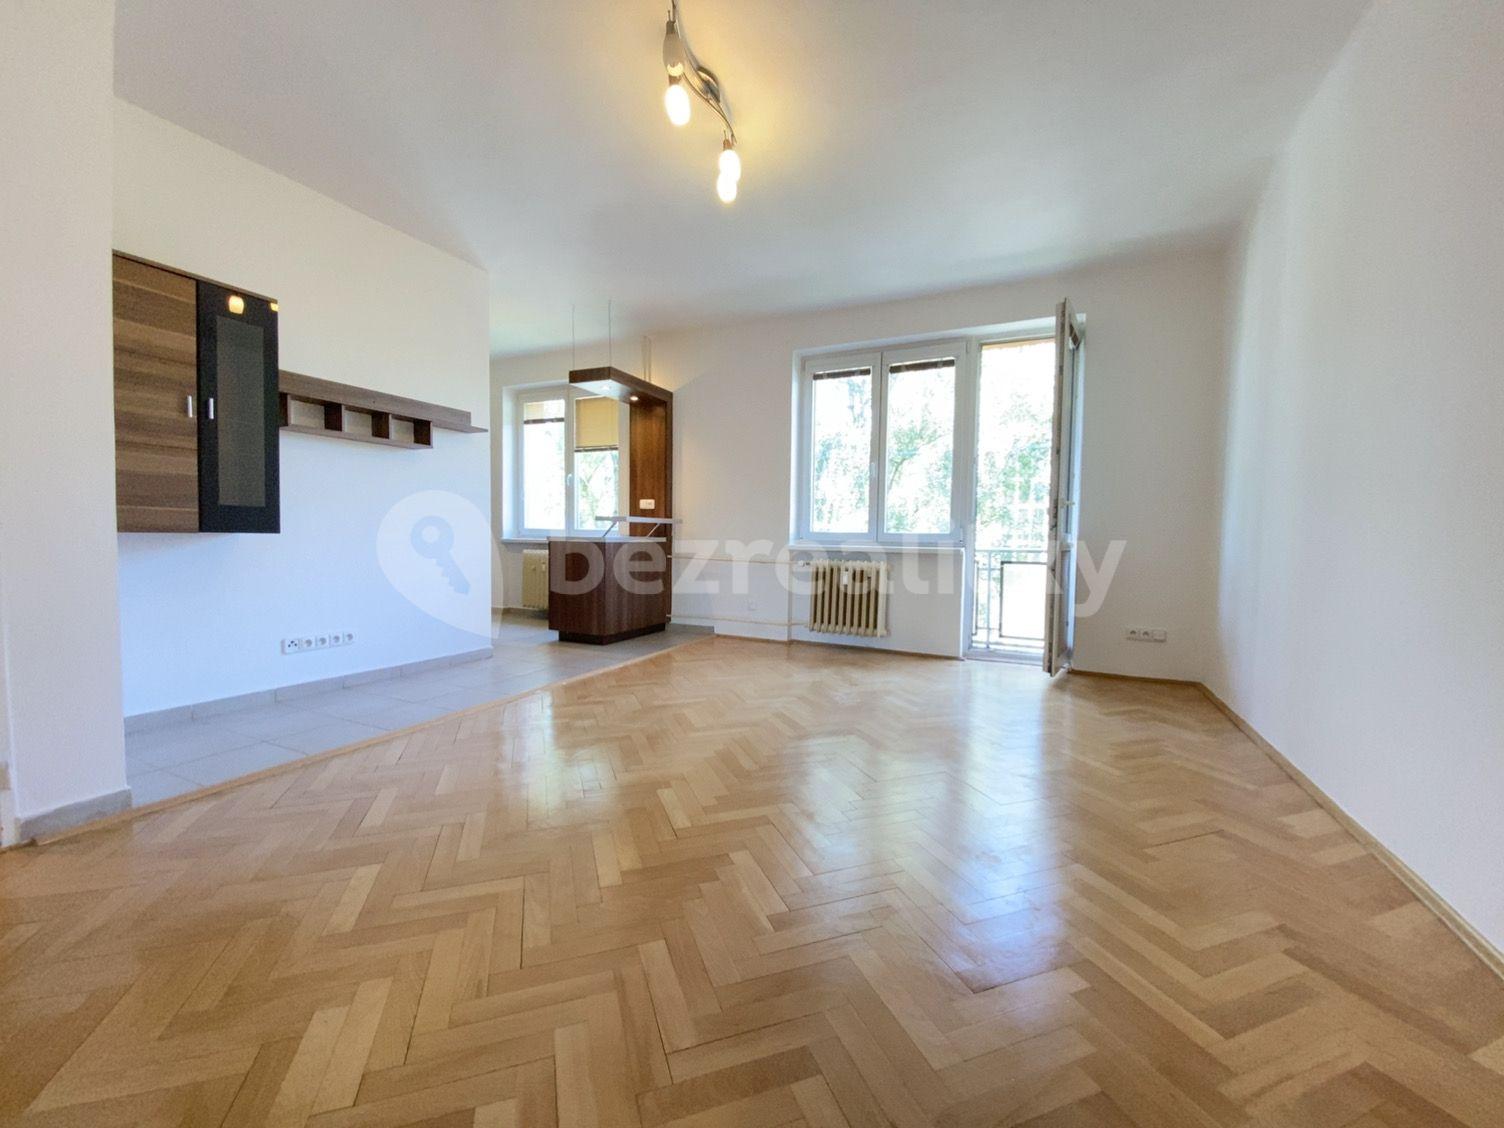 2 bedroom flat to rent, 54 m², Šumperská, Prague, Prague